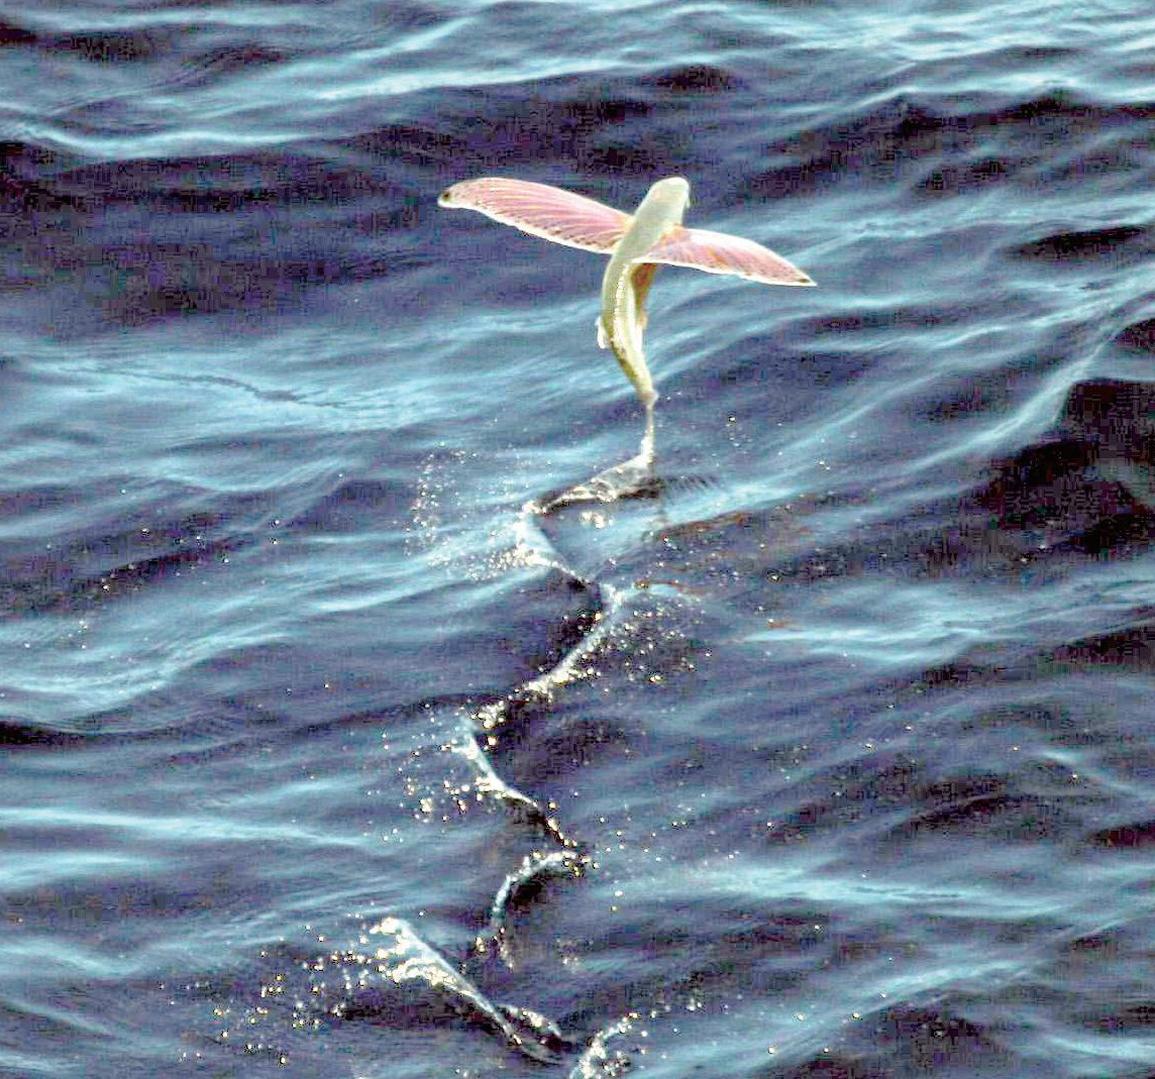 无数条长着翅膀的小鱼成群结队地跳出水面,奋力扇动着翅膀,摇着